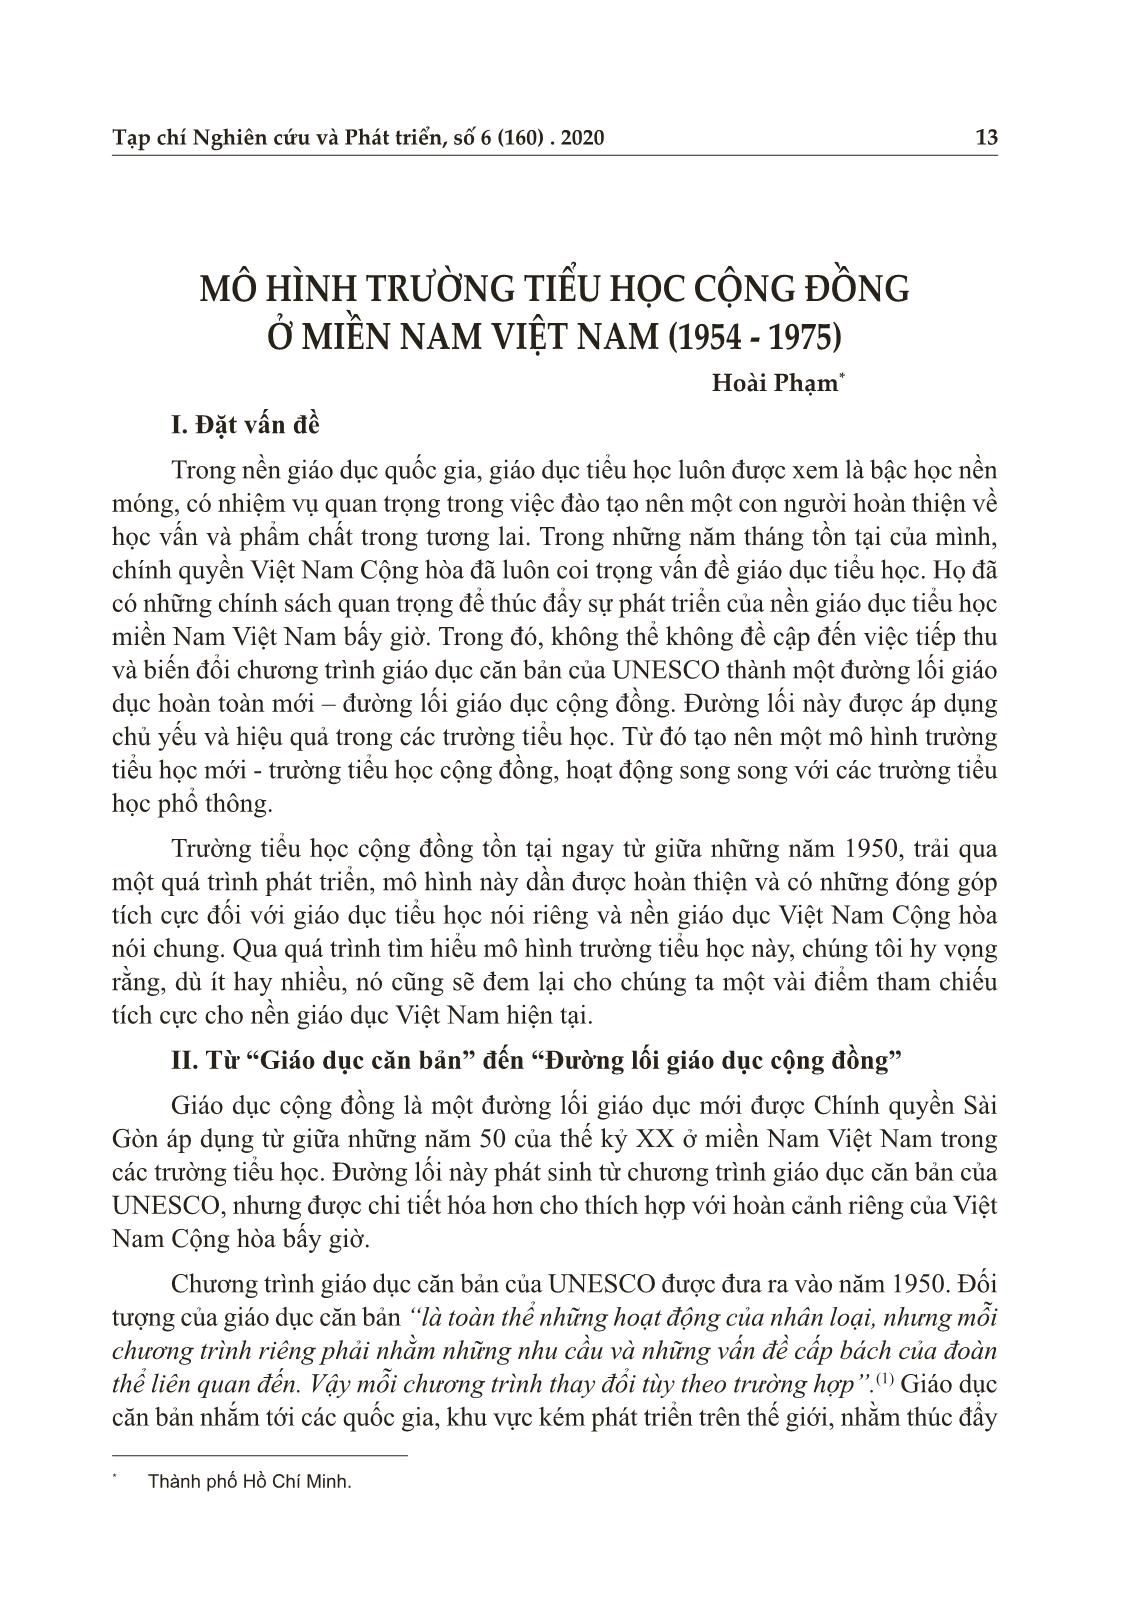 Mô hình trường Tiểu học cộng đồng ở miền Nam Việt Nam (1954-1975) trang 1